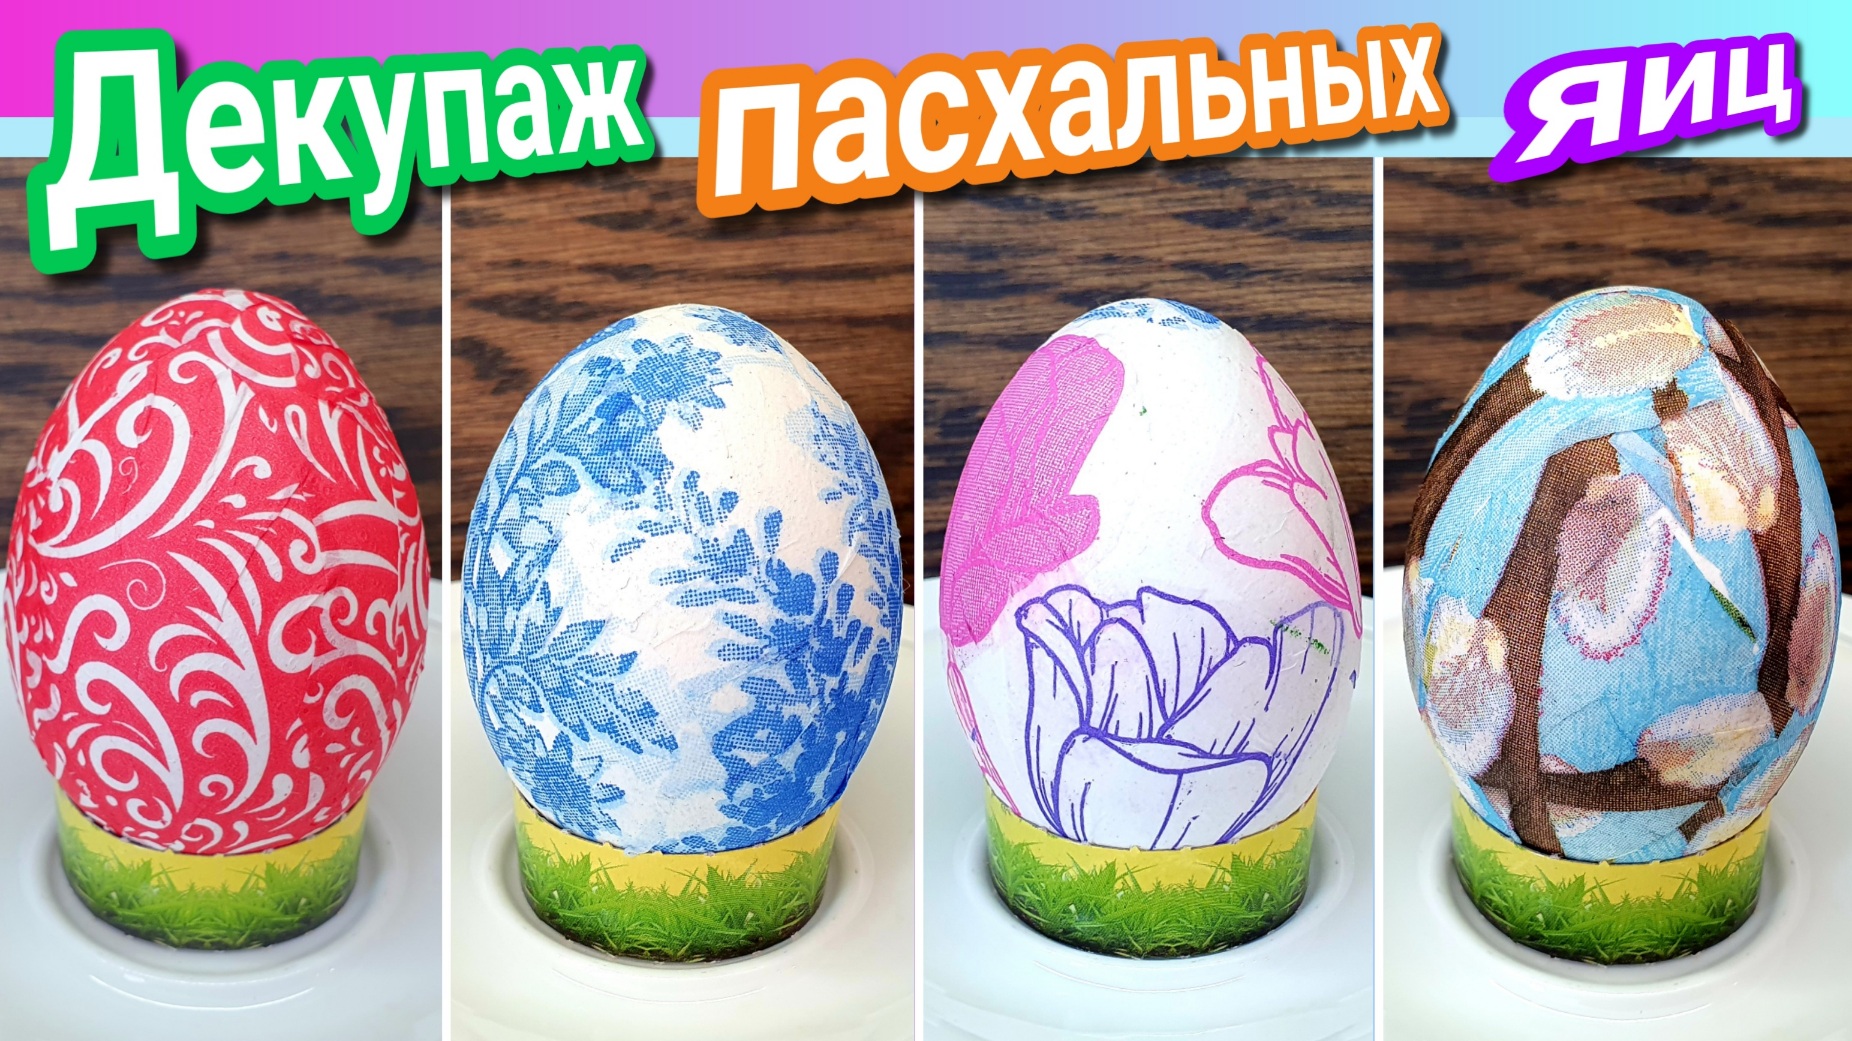 Декупаж пасхальных яиц салфетками. Как украсить пасхальные яйца?